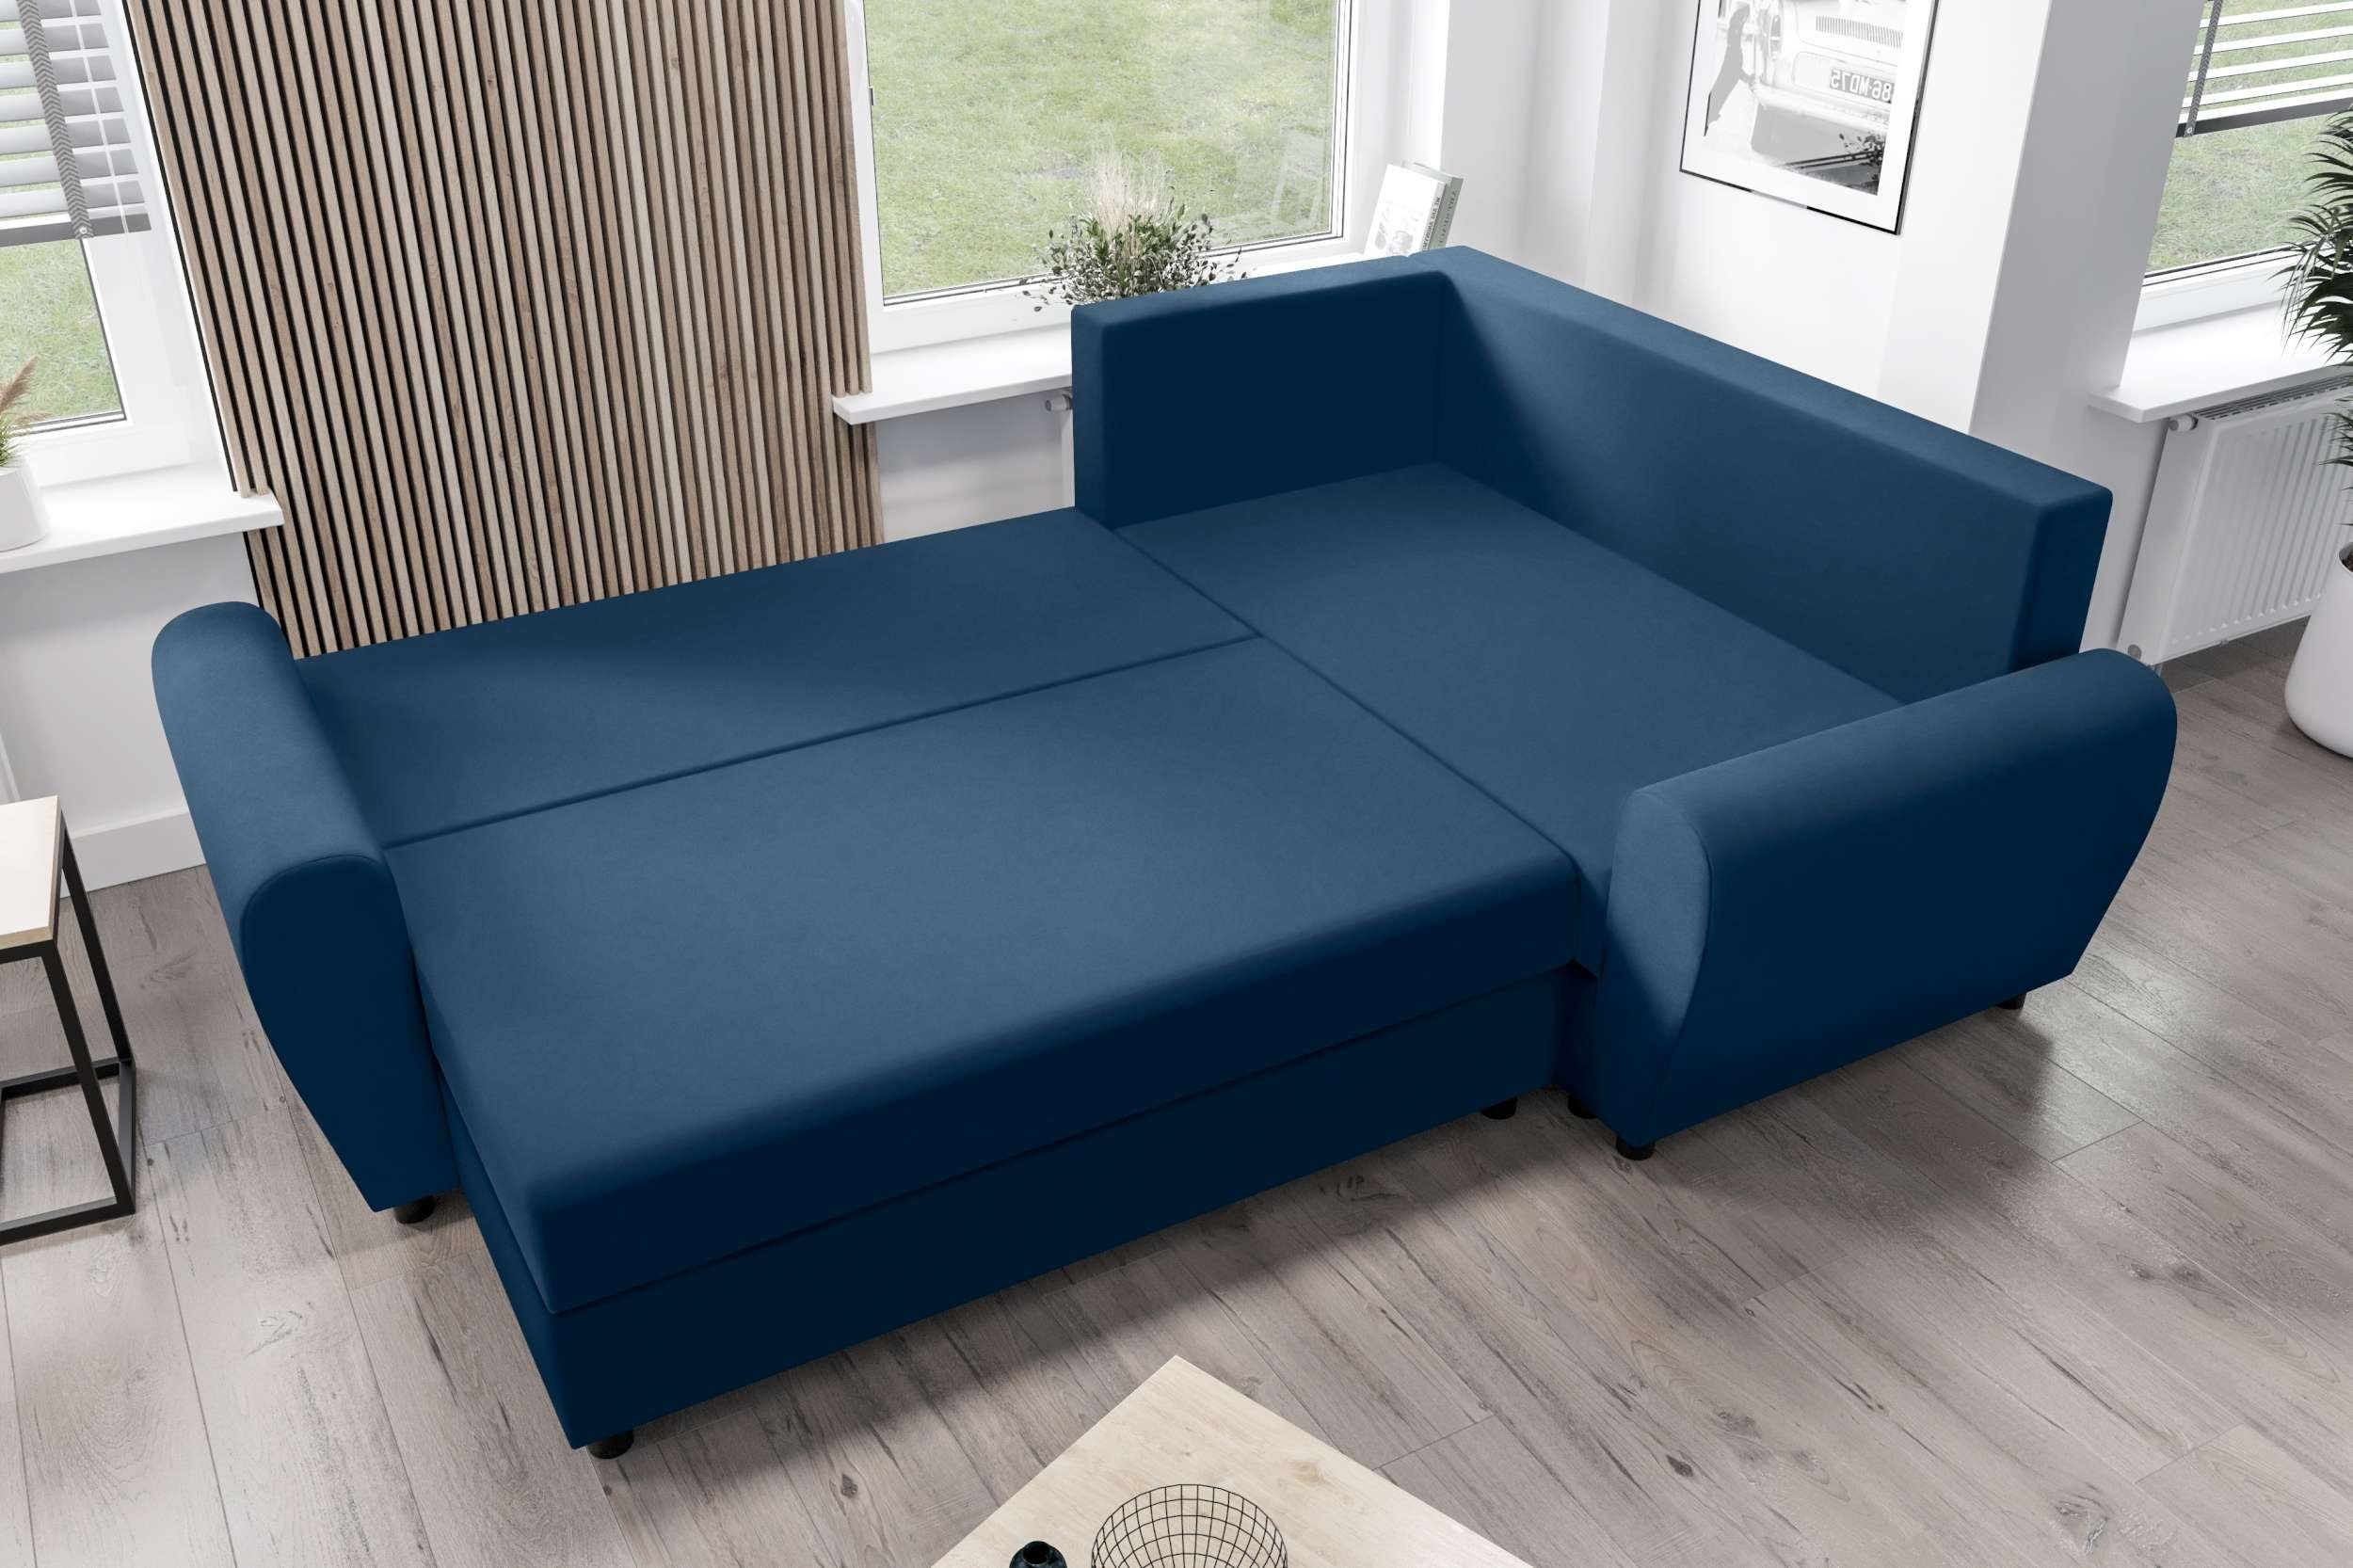 Ecksofa mit Bettkasten, Bettfunktion, mit Sitzkomfort, Design Sofa, Valence, L-Form, Eckcouch, Stylefy Modern